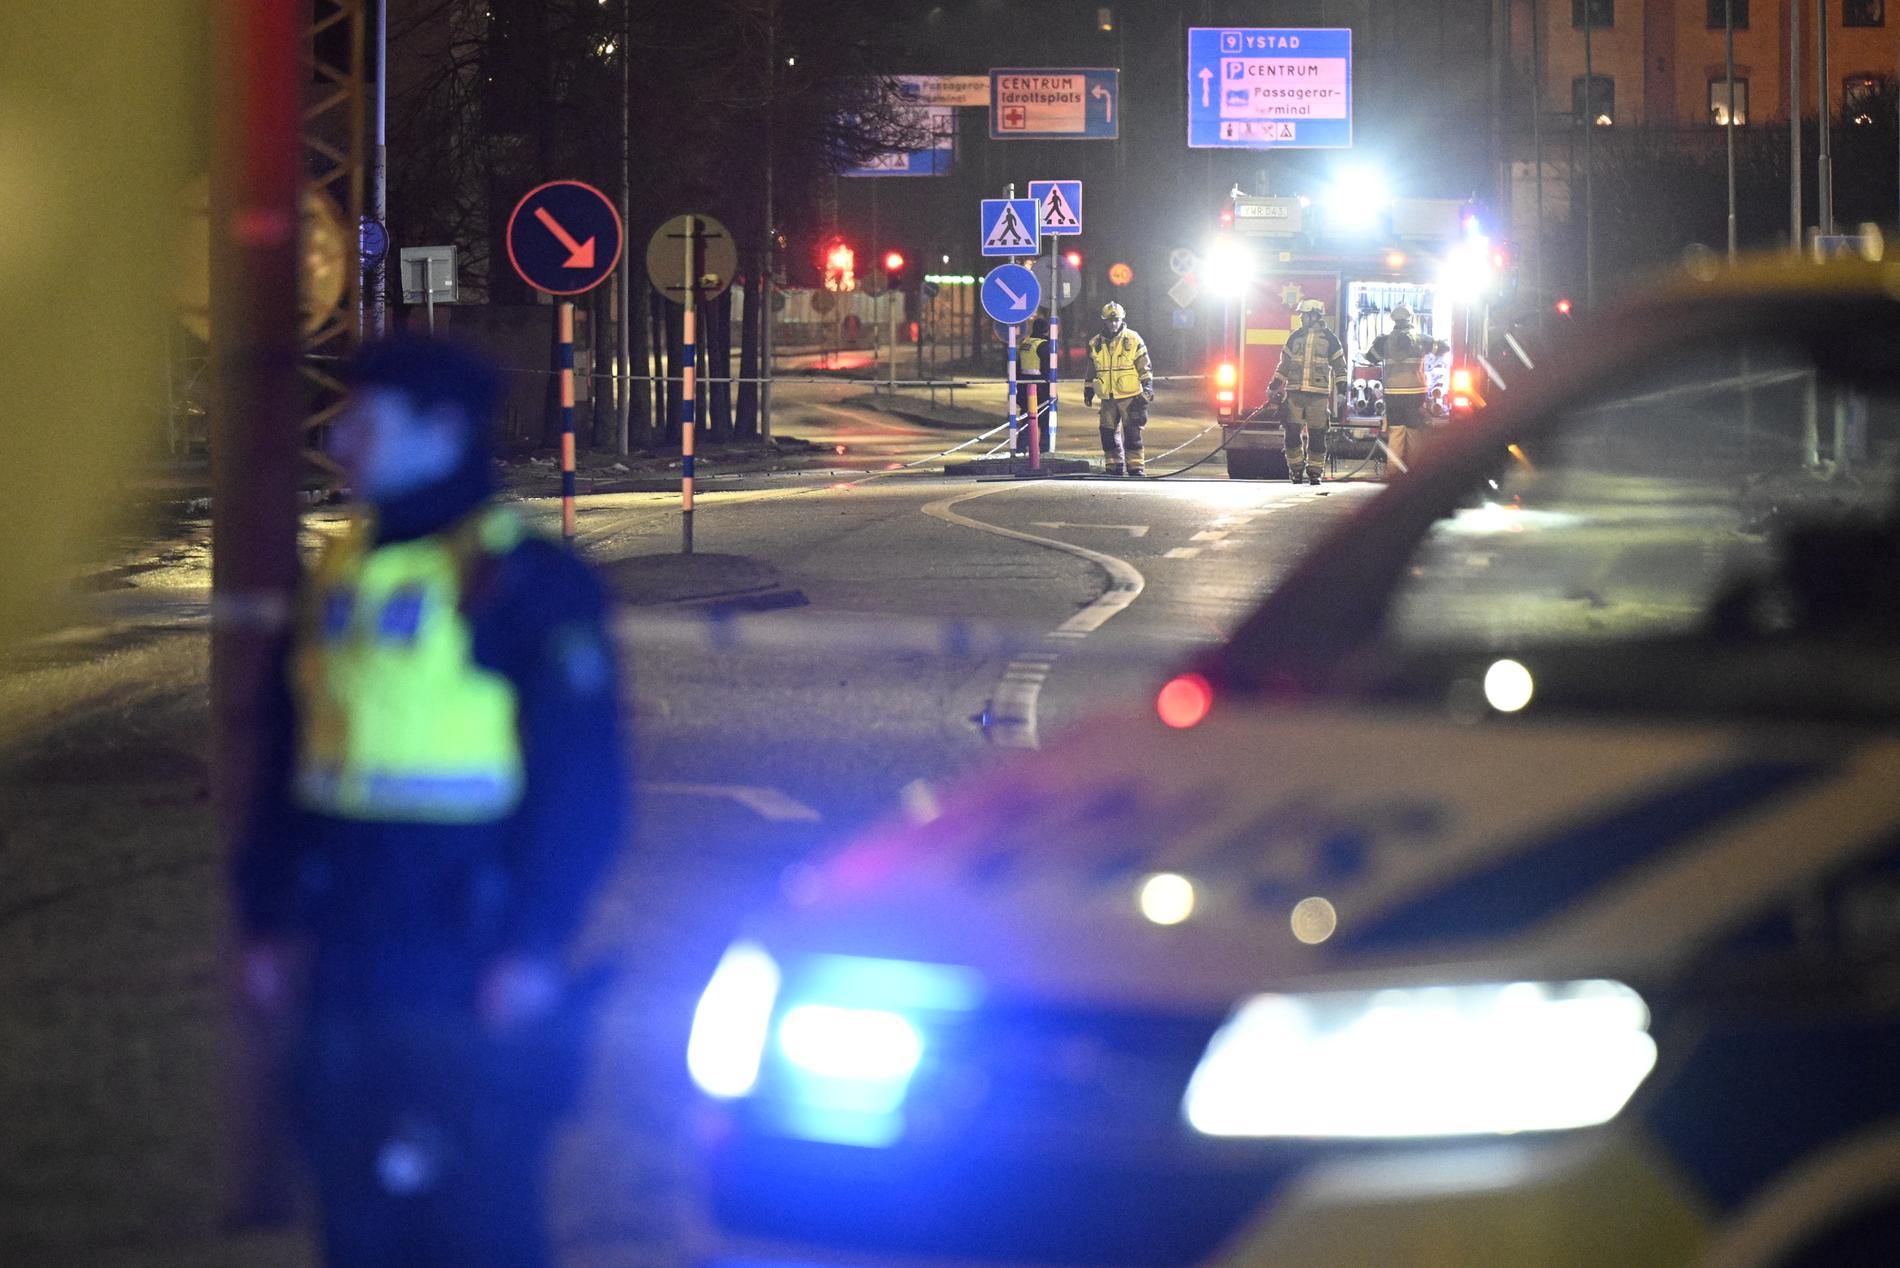 Polis på plats i Trelleborg efter lördagens larm om en våldsam man. Mannen sköts av polis och vårdas för allvarliga skador. Arkivbild.